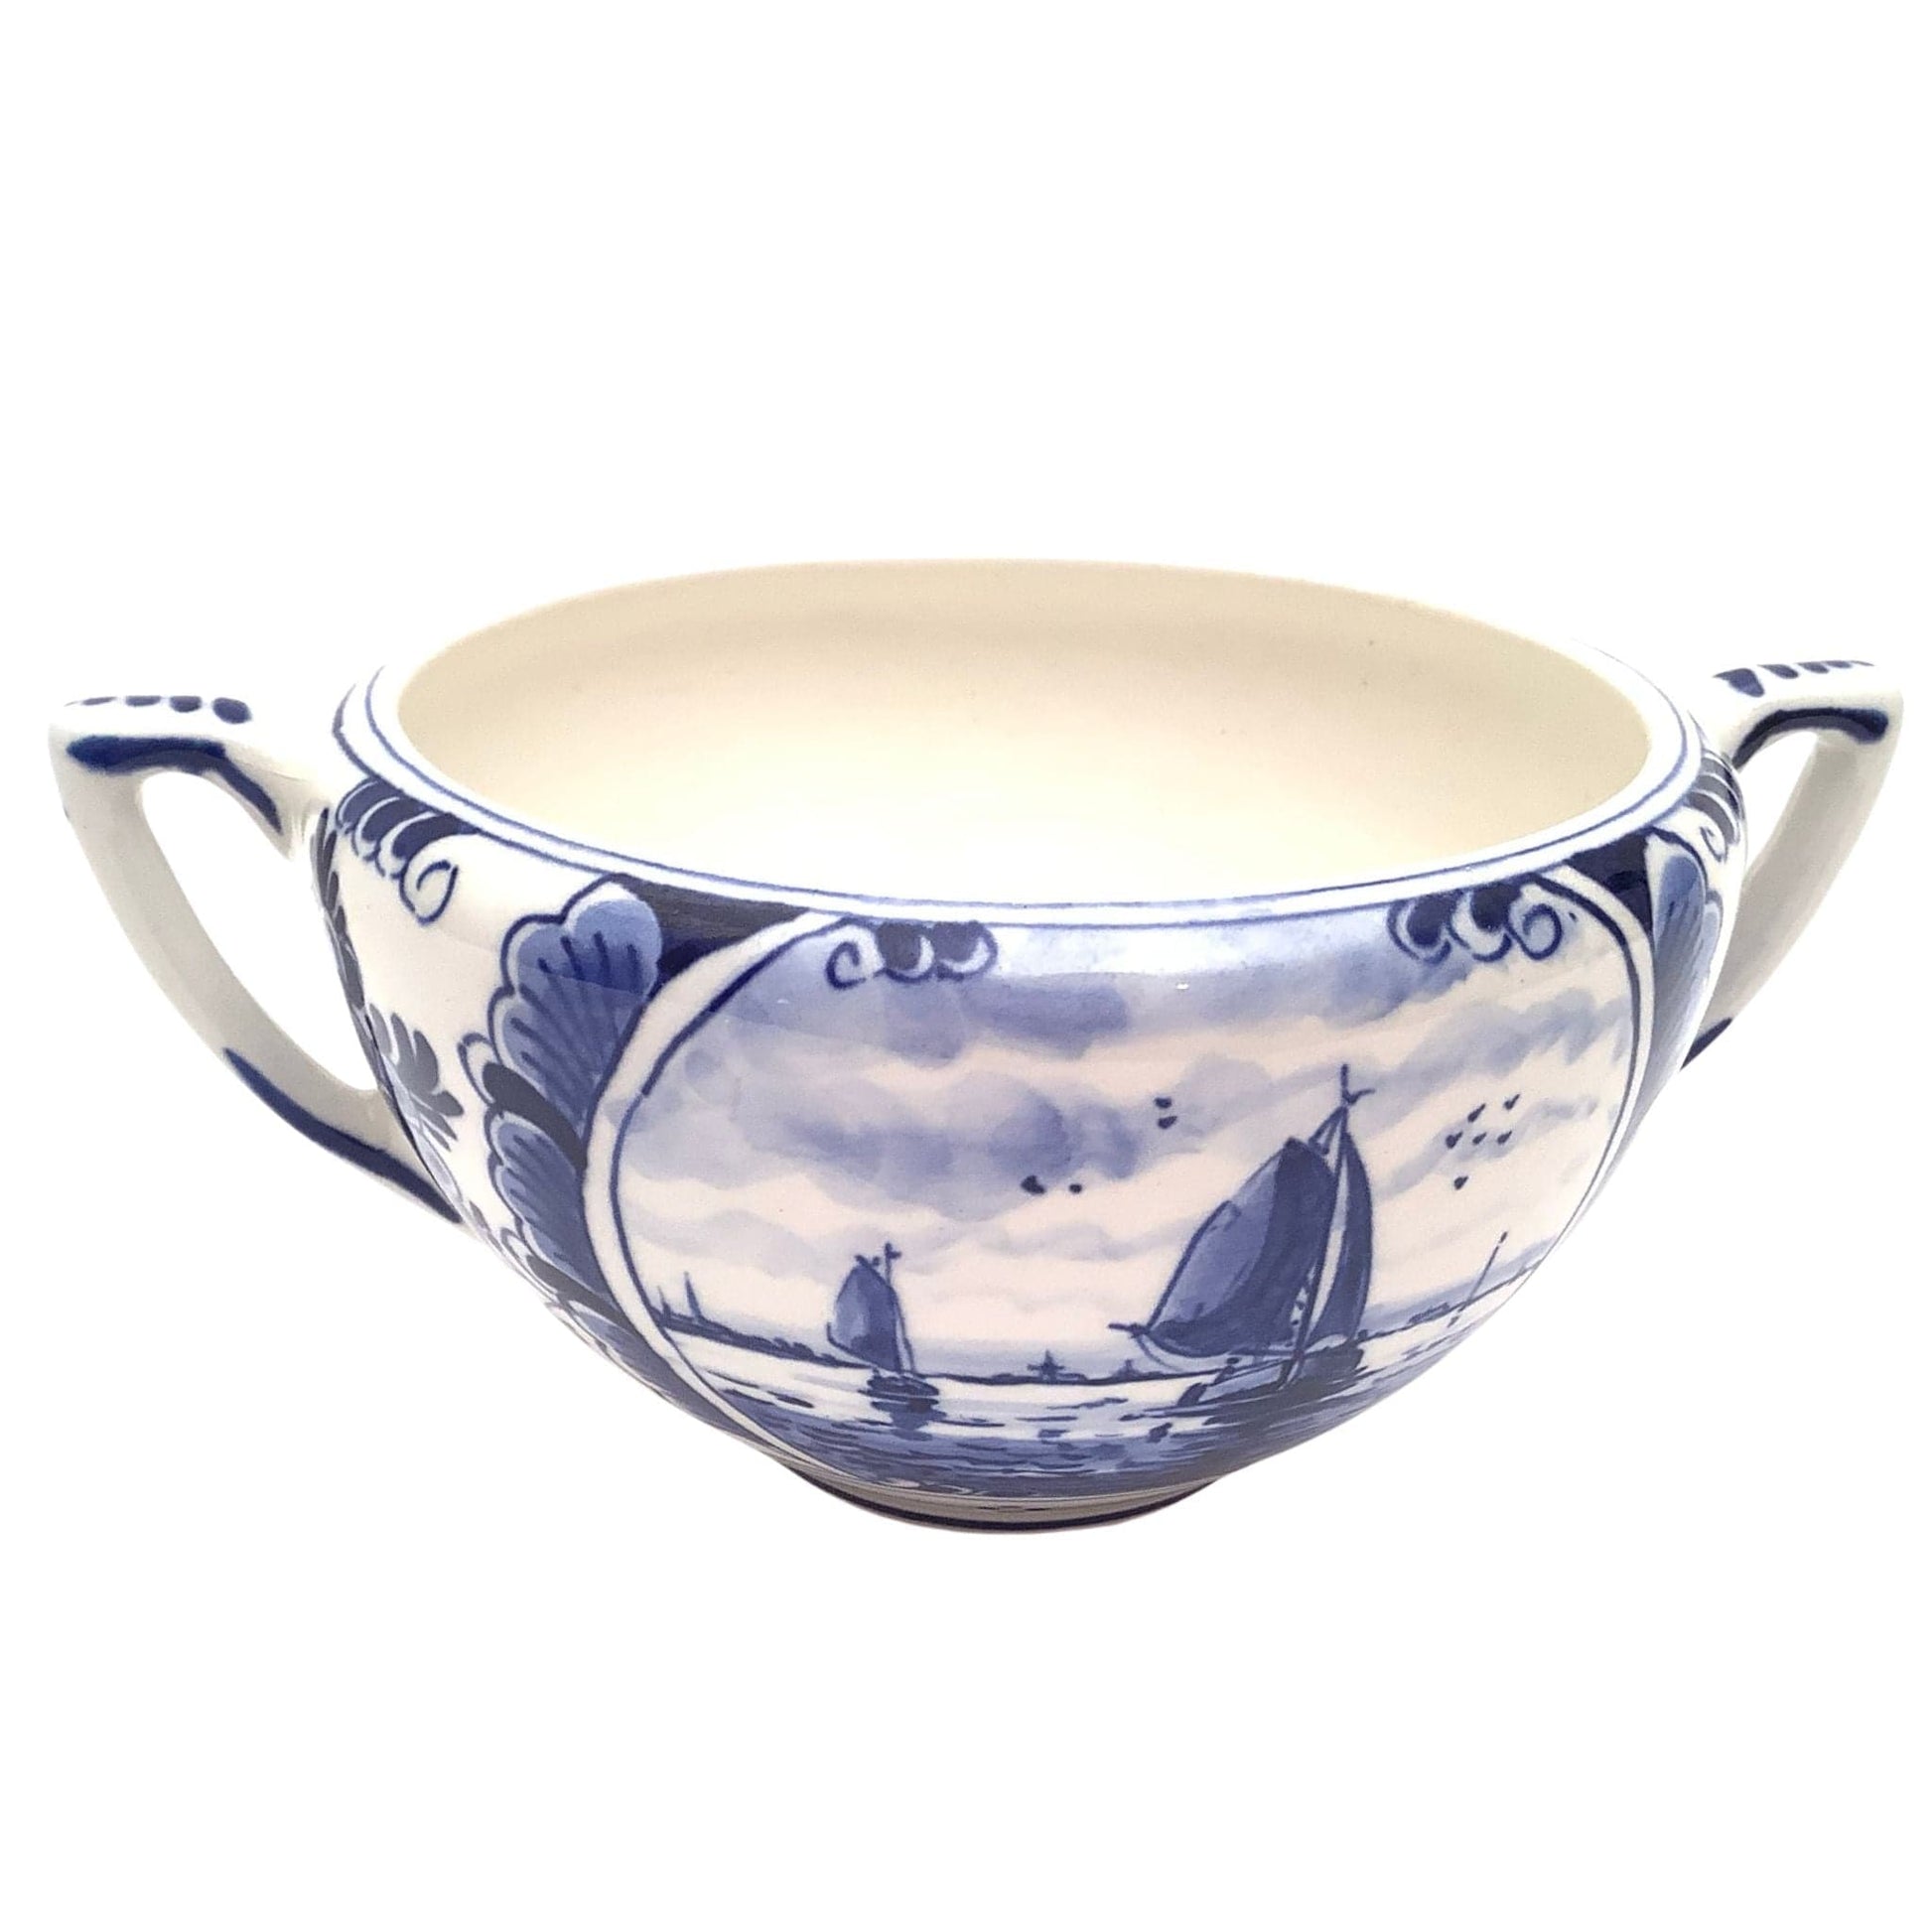 Antique Ceramic Sugar Bowl Blue / Ceramic / Faience